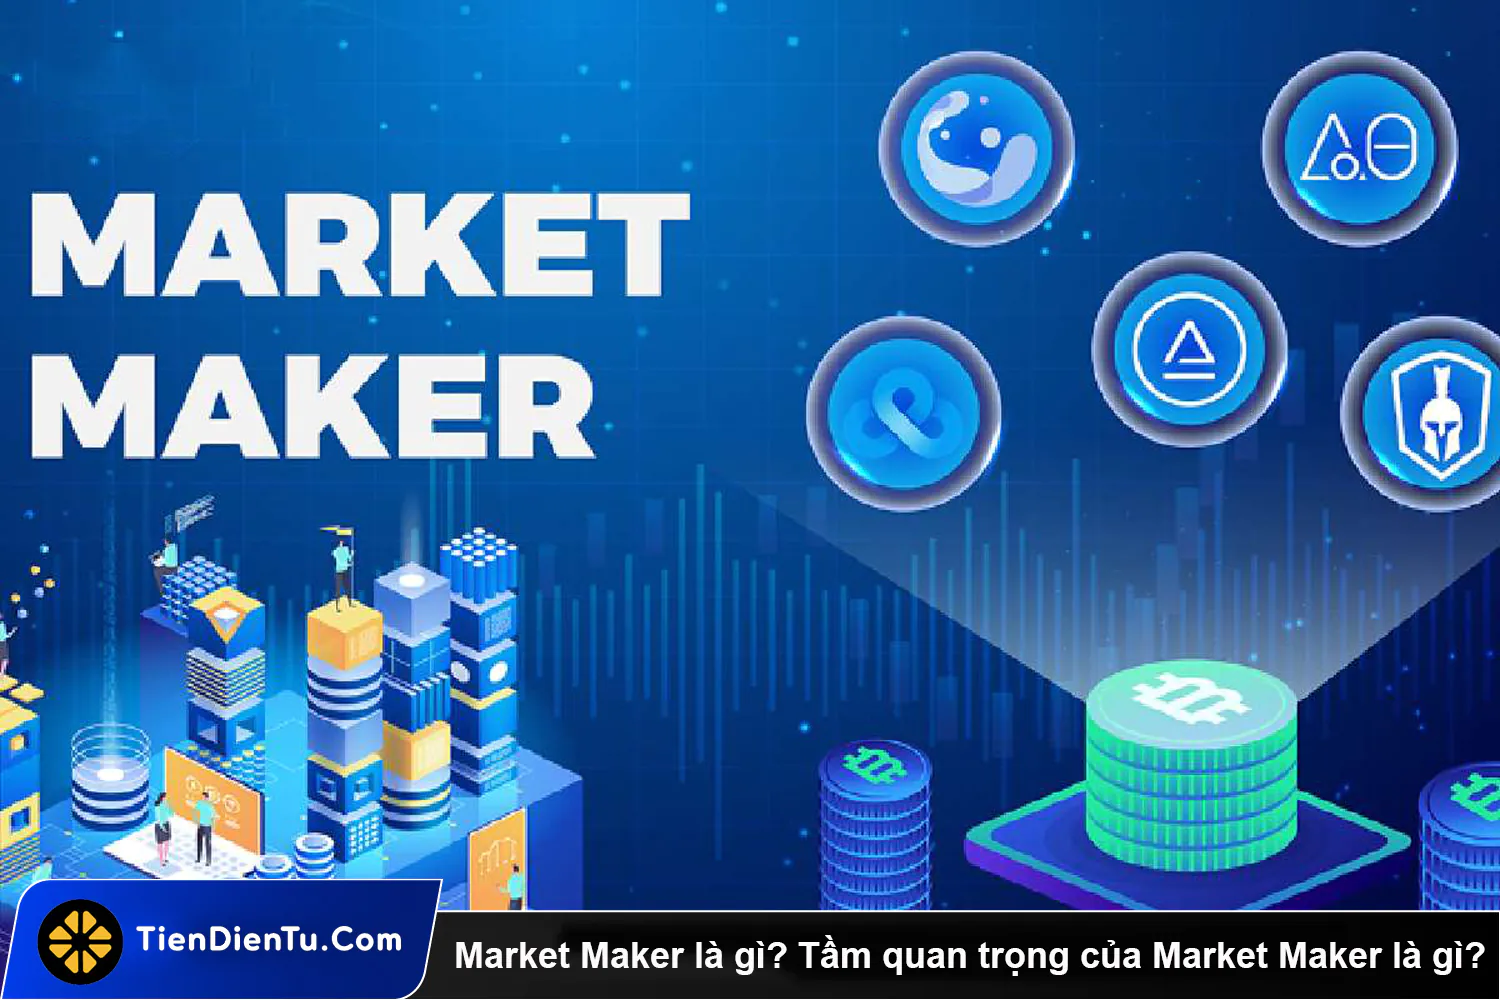 Market Maker la gi